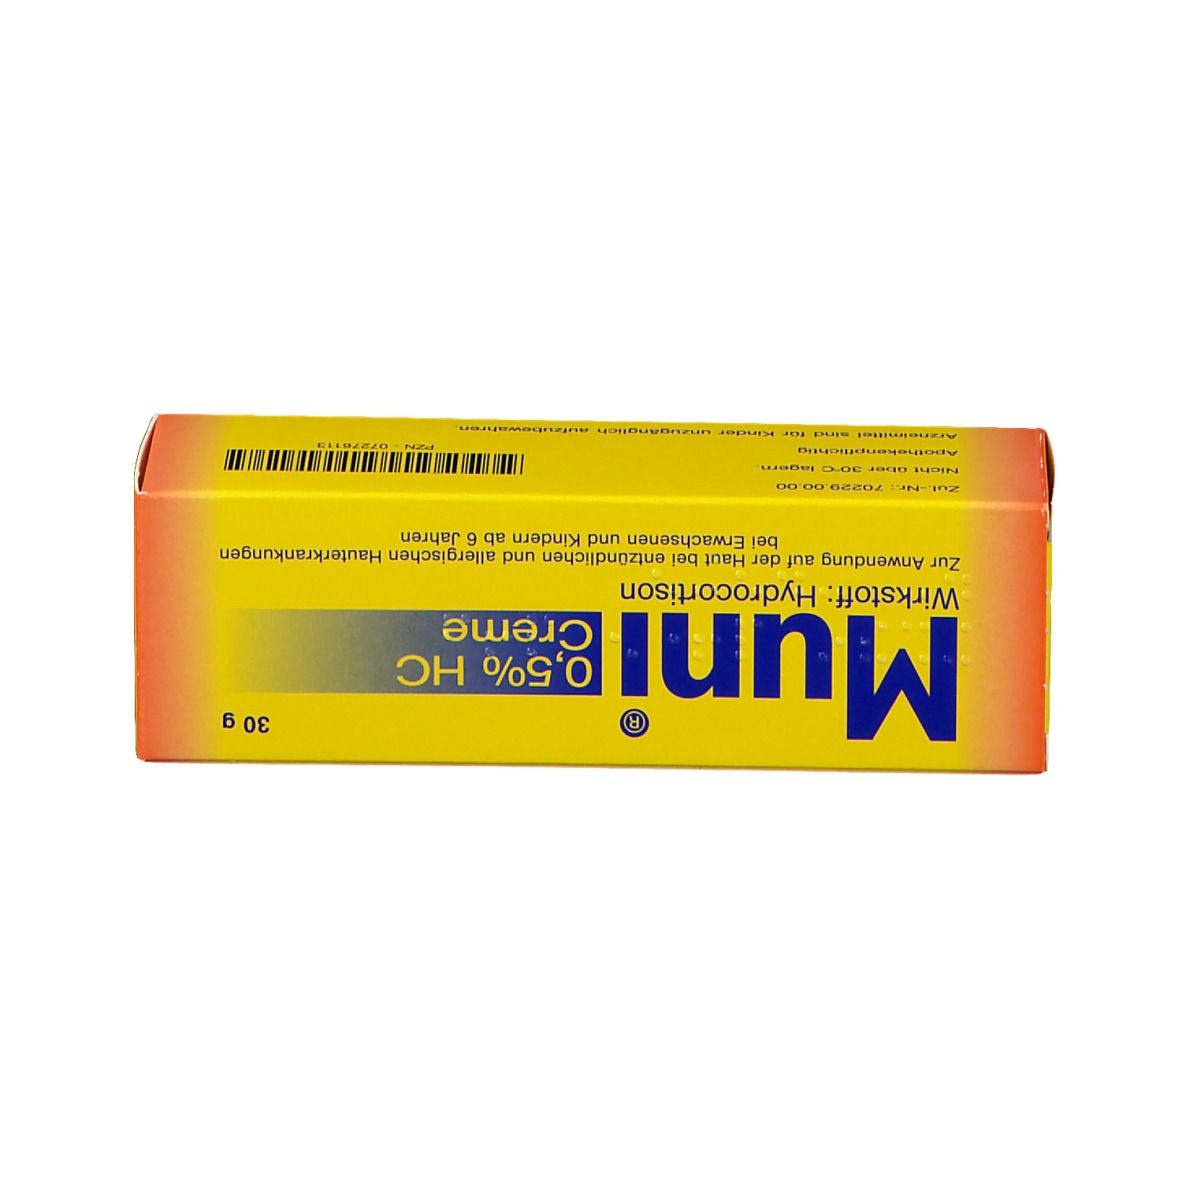 Muni® 0,5 % HC Creme